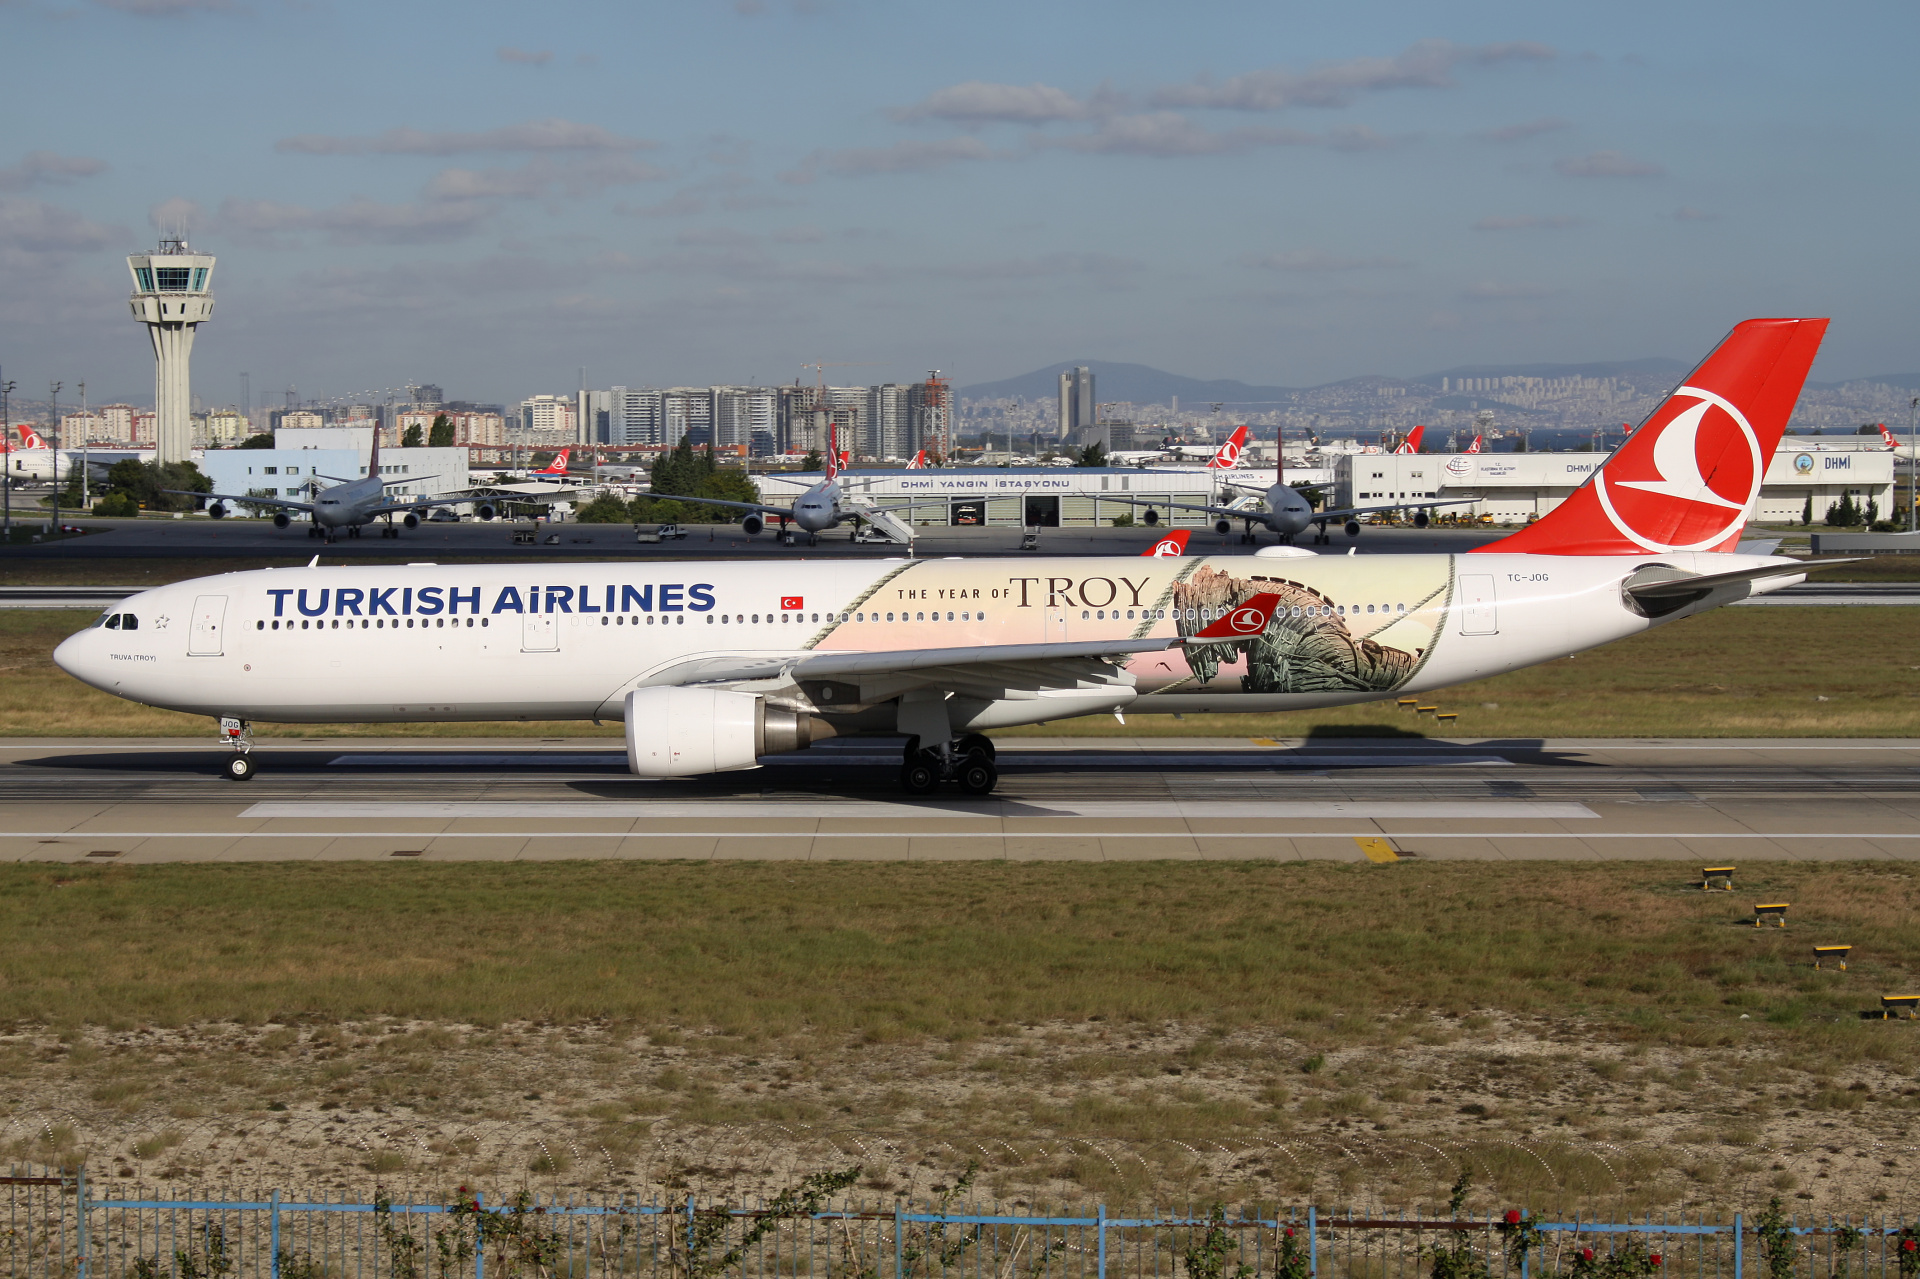 TC-JOG (malowanie The Year of Troy) (Samoloty » Port Lotniczy im. Atatürka w Stambule » Airbus A330-300 » THY Turkish Airlines)